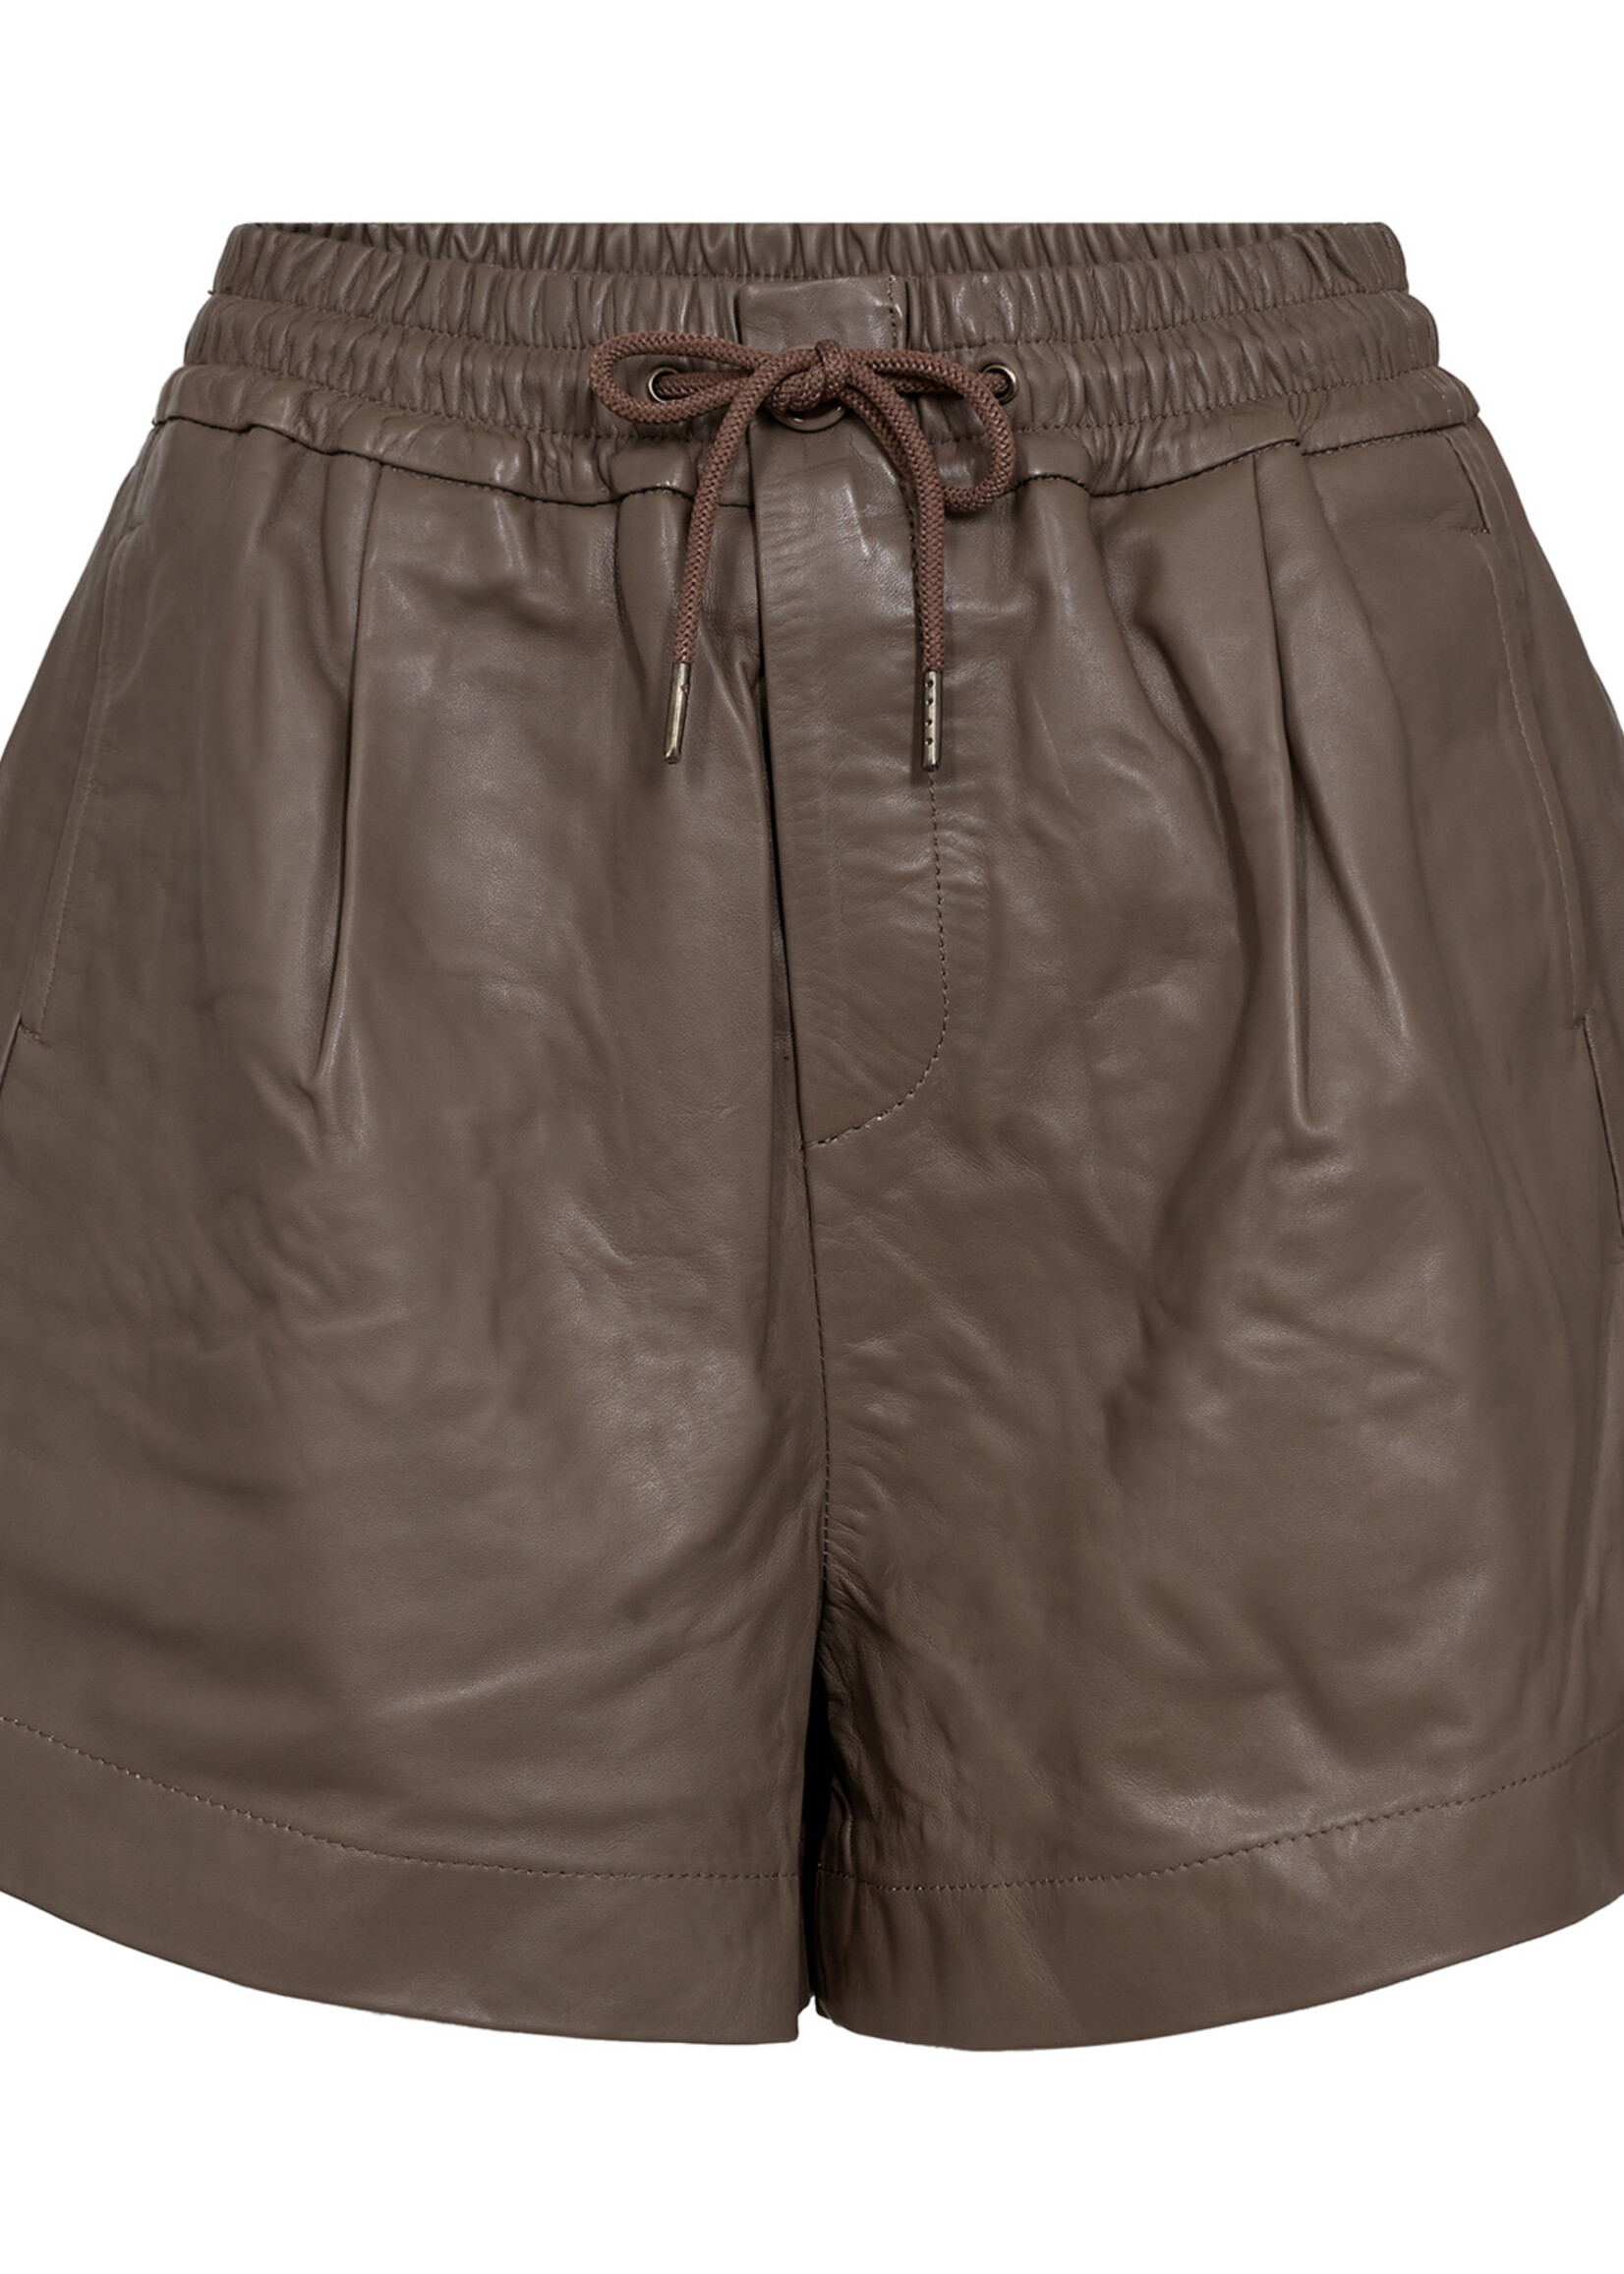 Co'Couture New PhoebeCC Leather Shorts - Elephant